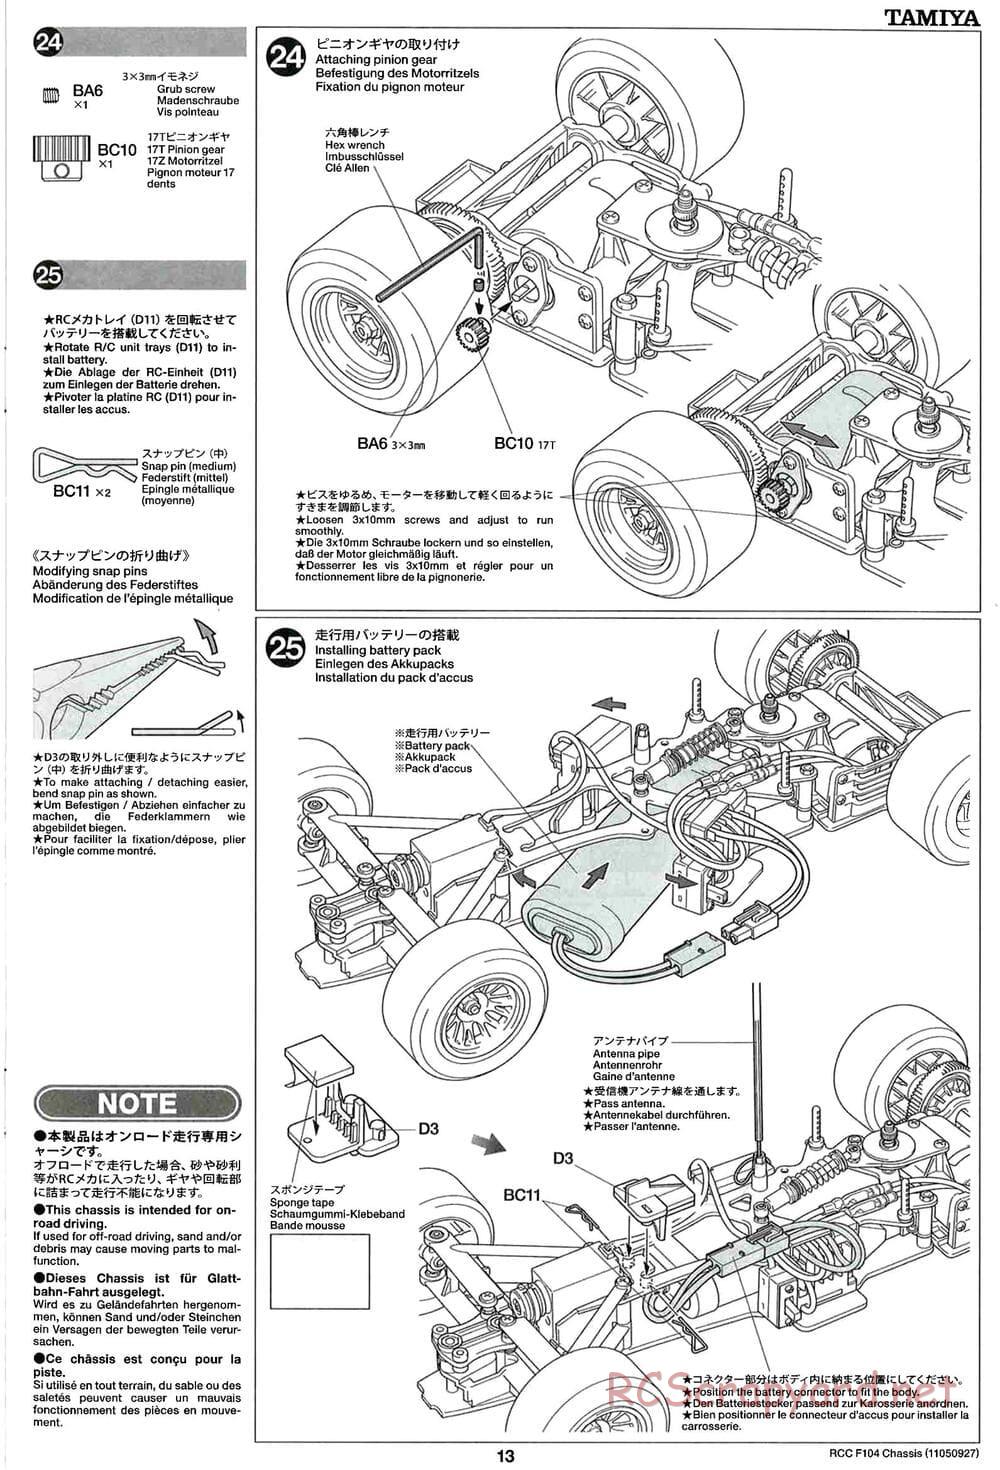 Tamiya - F104 Chassis - Manual - Page 13